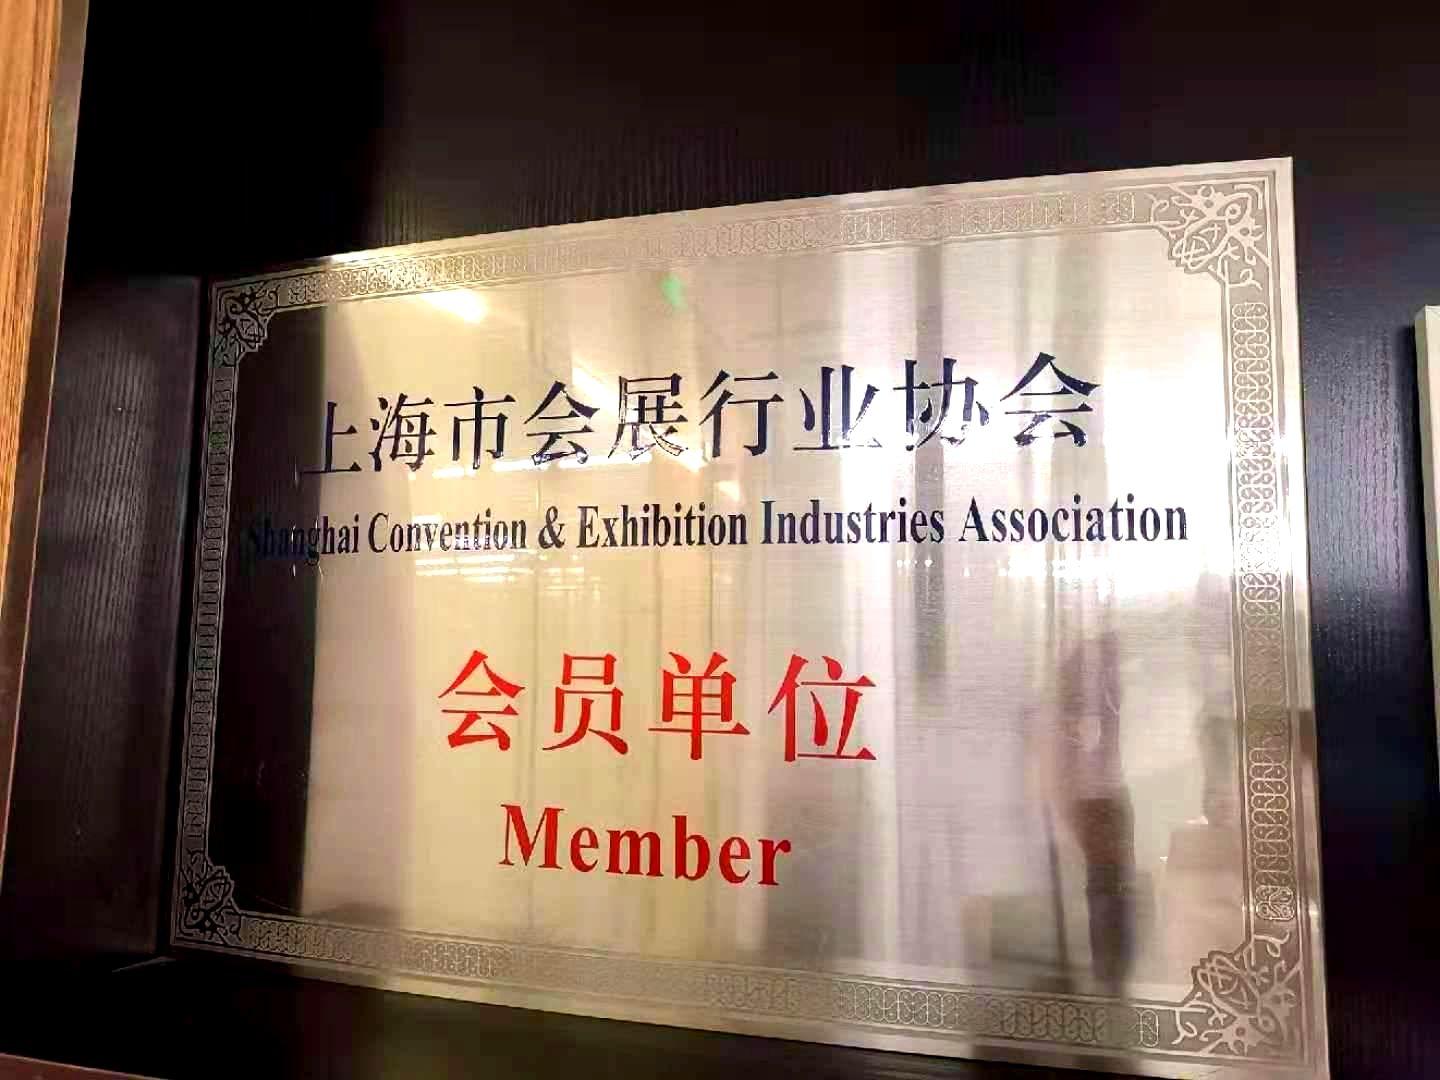 上海老哥俱乐部展柜厂获得奖项证书